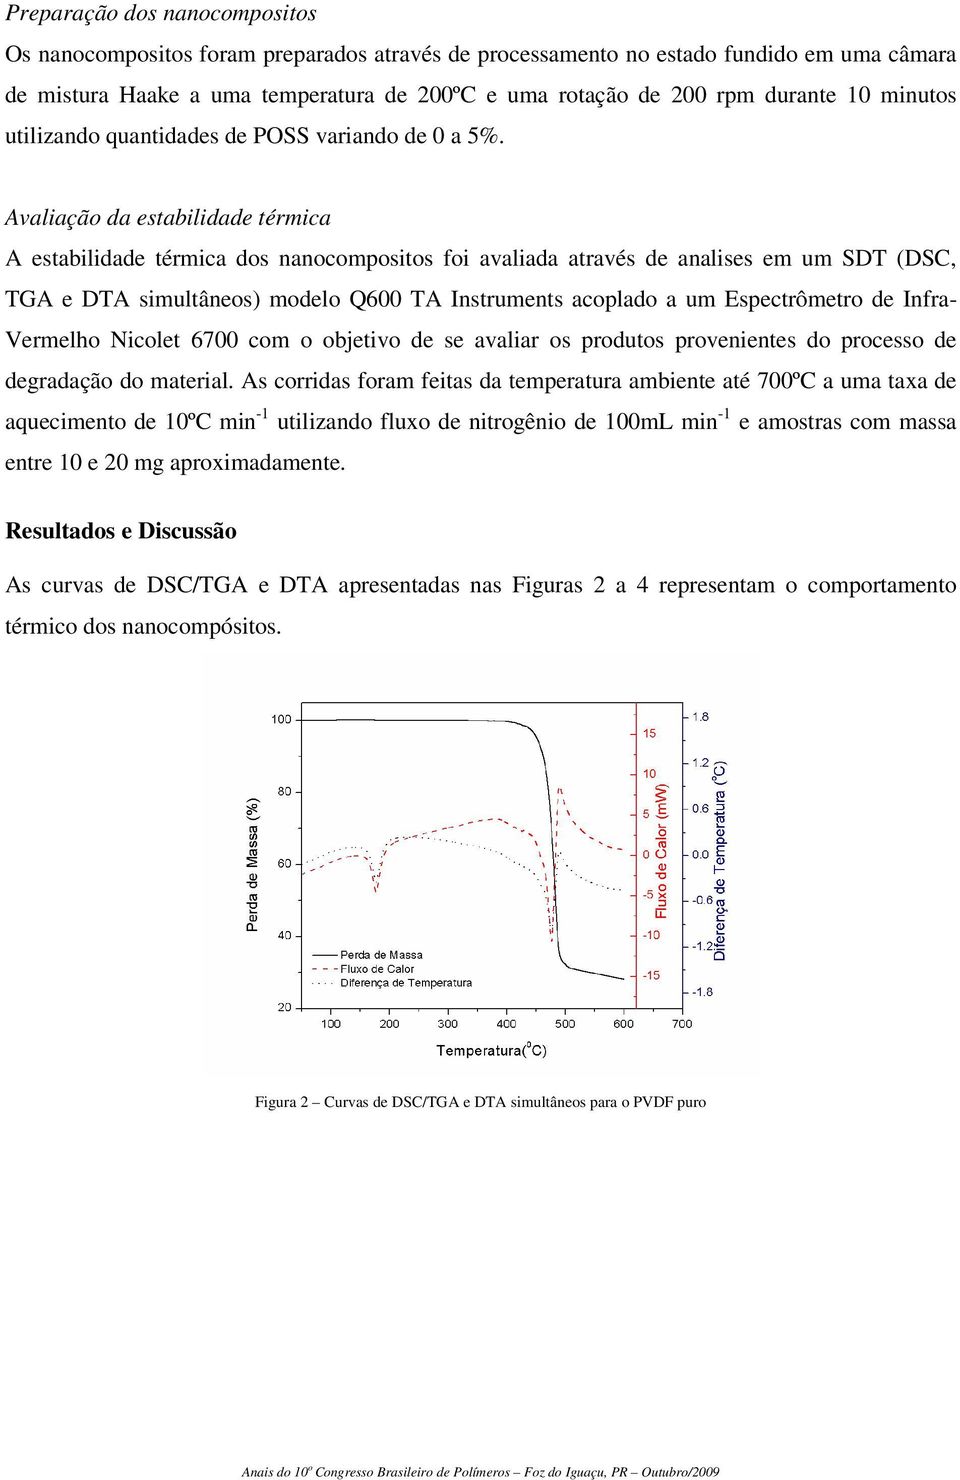 Avaliação da estabilidade térmica A estabilidade térmica dos nanocompositos foi avaliada através de analises em um SDT (DSC, TGA e DTA simultâneos) modelo Q600 TA Instruments acoplado a um